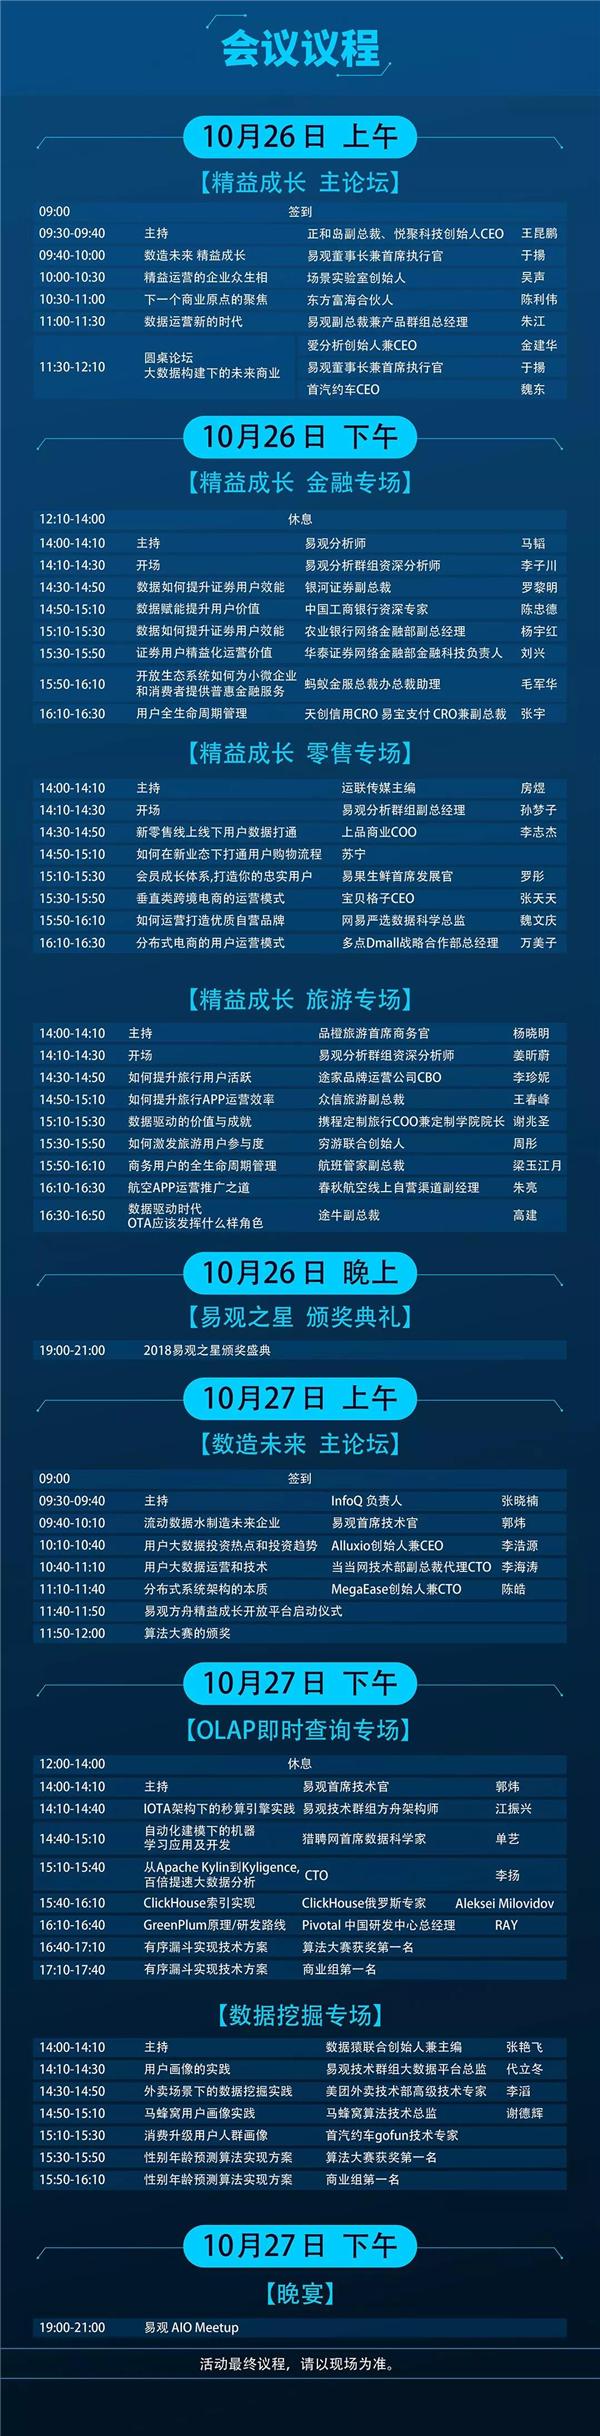 30+国内外技术男神倾巢出动，今年10月末北京有大事发生